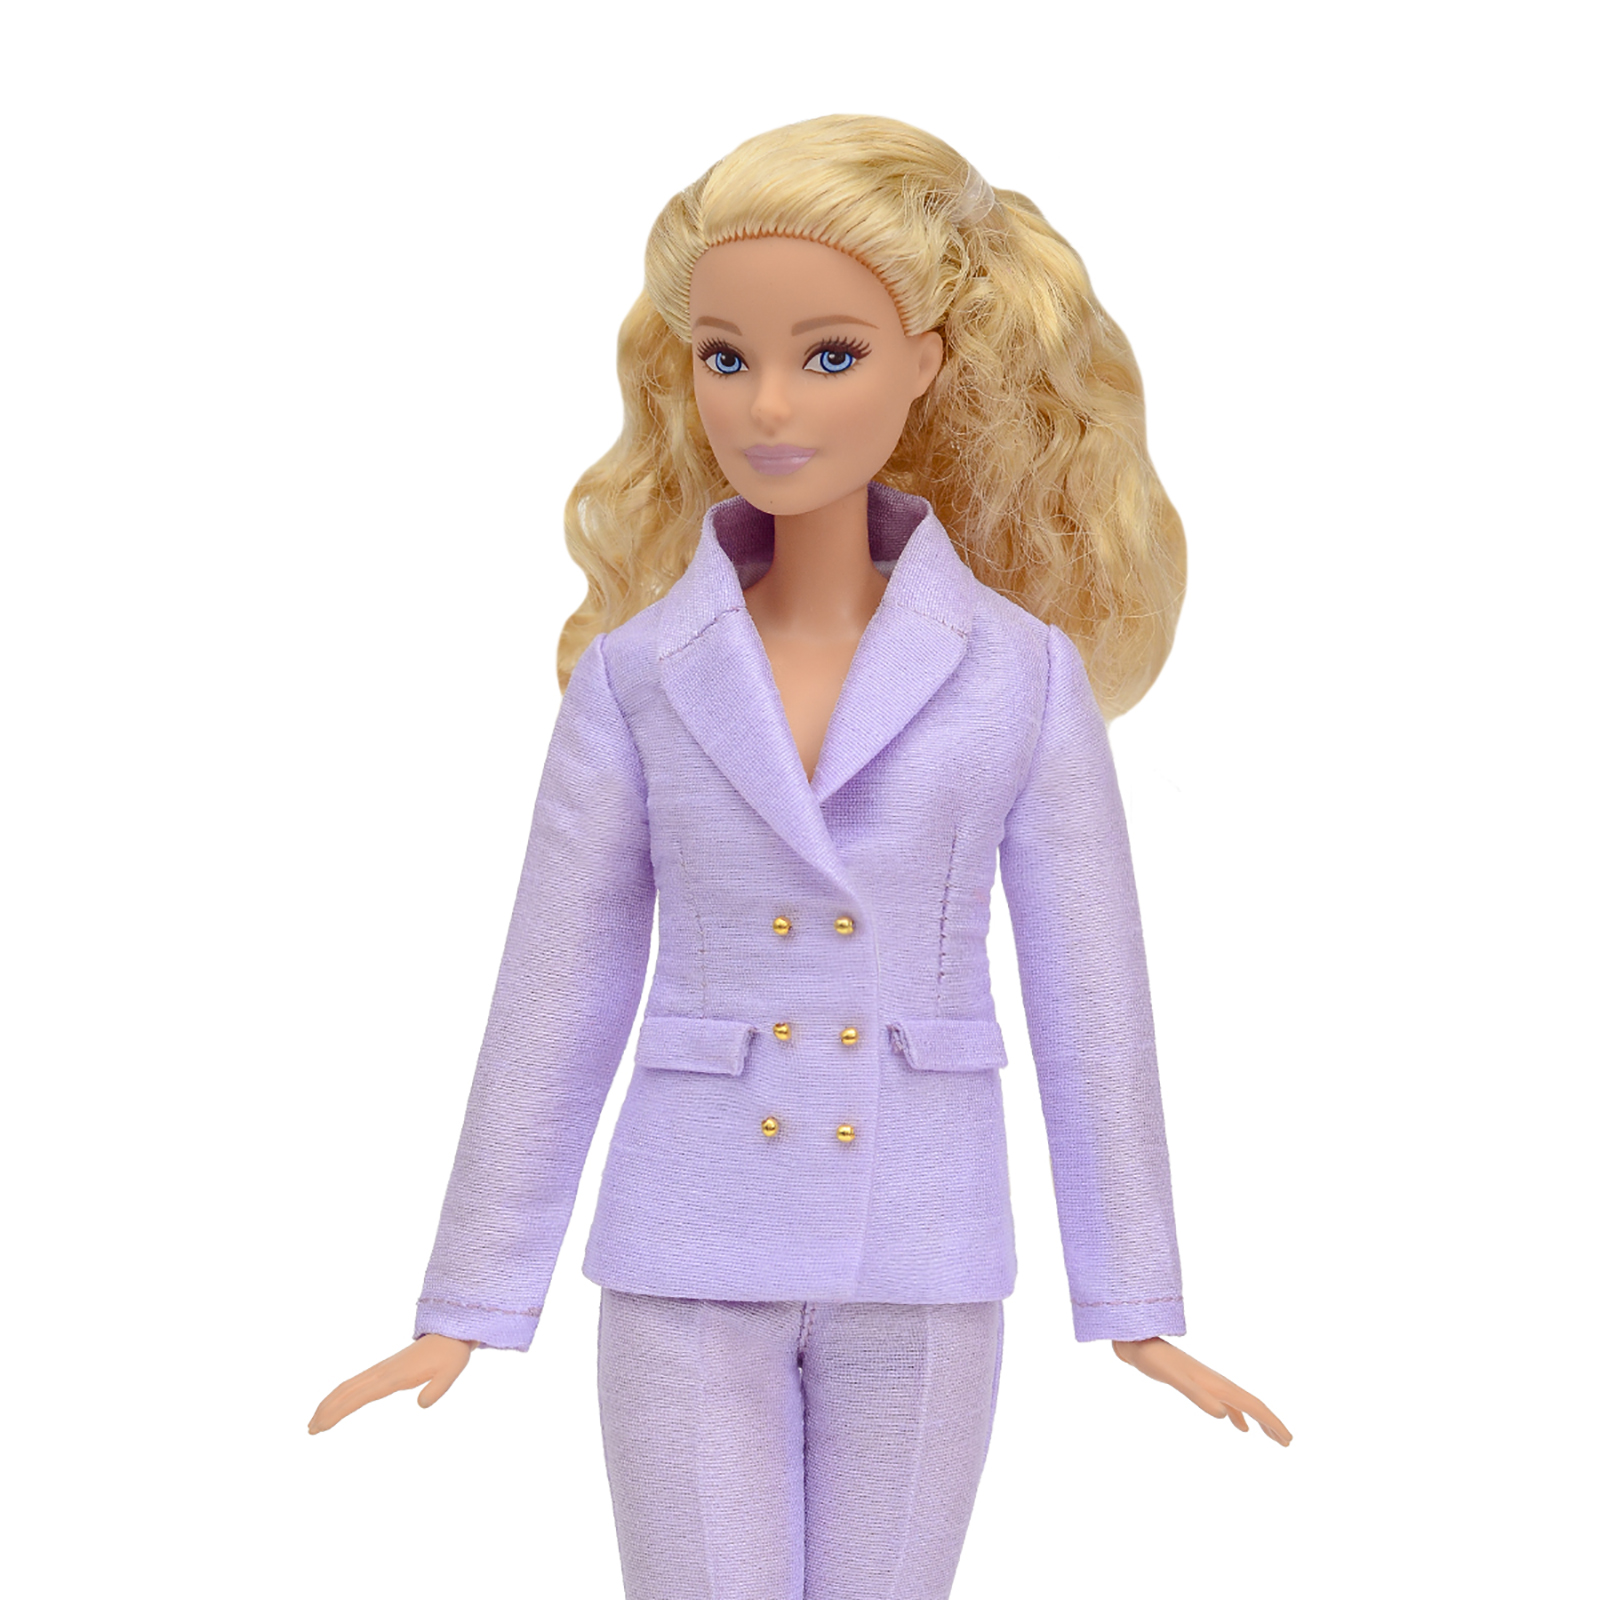 Шелковый брючный костюм Эленприв Фиолетовый для куклы 29 см типа Барби FA-011-11 - фото 9